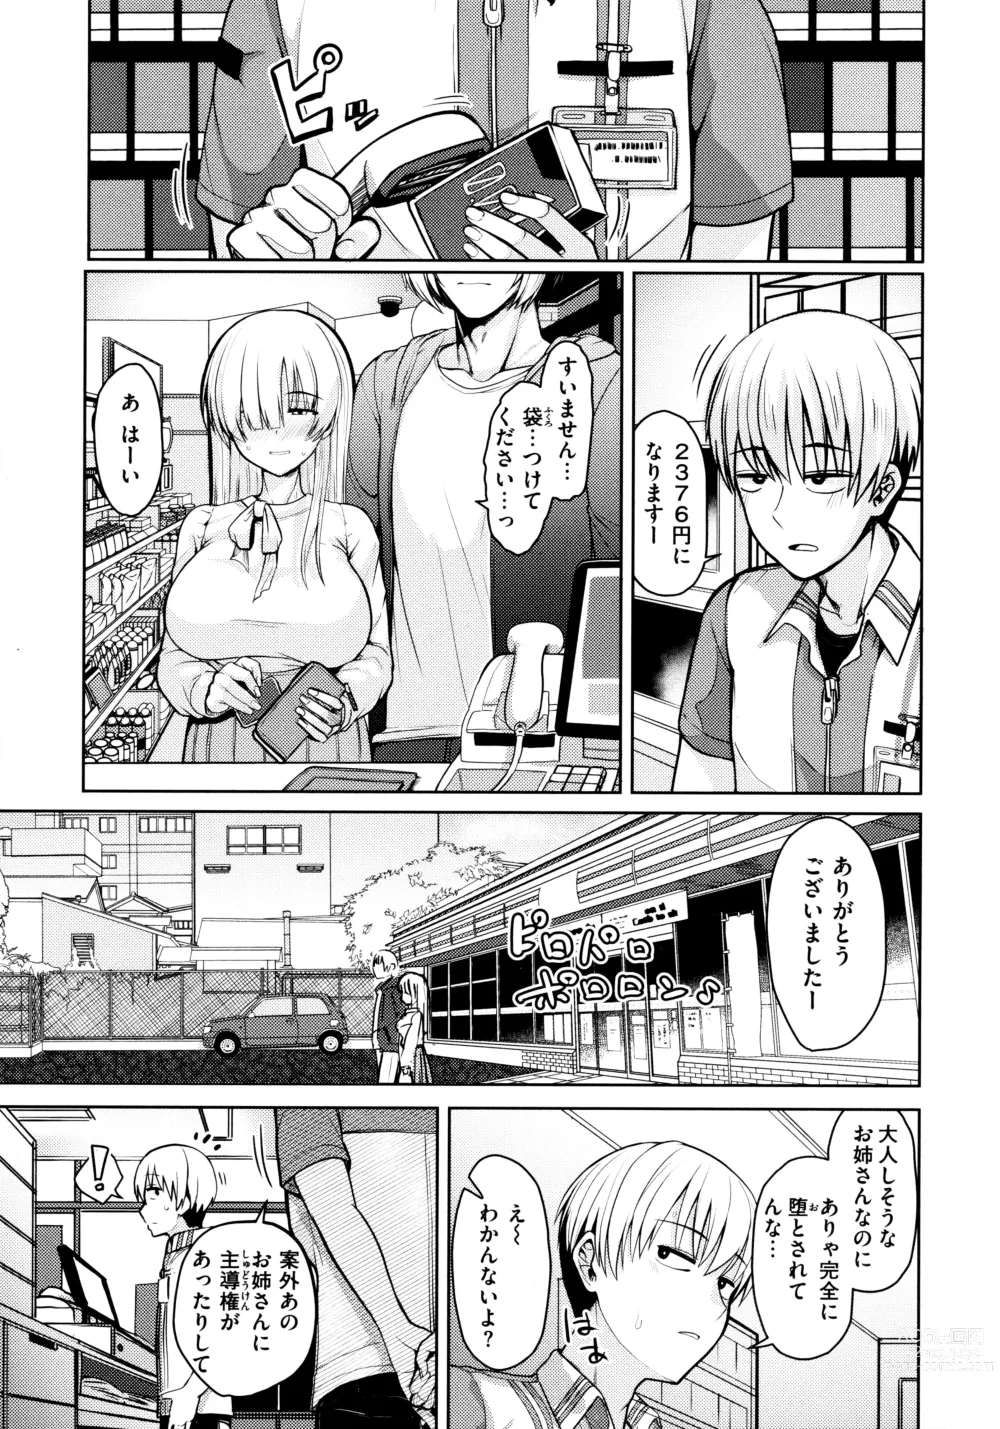 Page 21 of manga Nukunuku Seikatsu - Life Full of Sex + Melonbooks Kounyu Tokuten + Toranoana Kounyu Tokuten